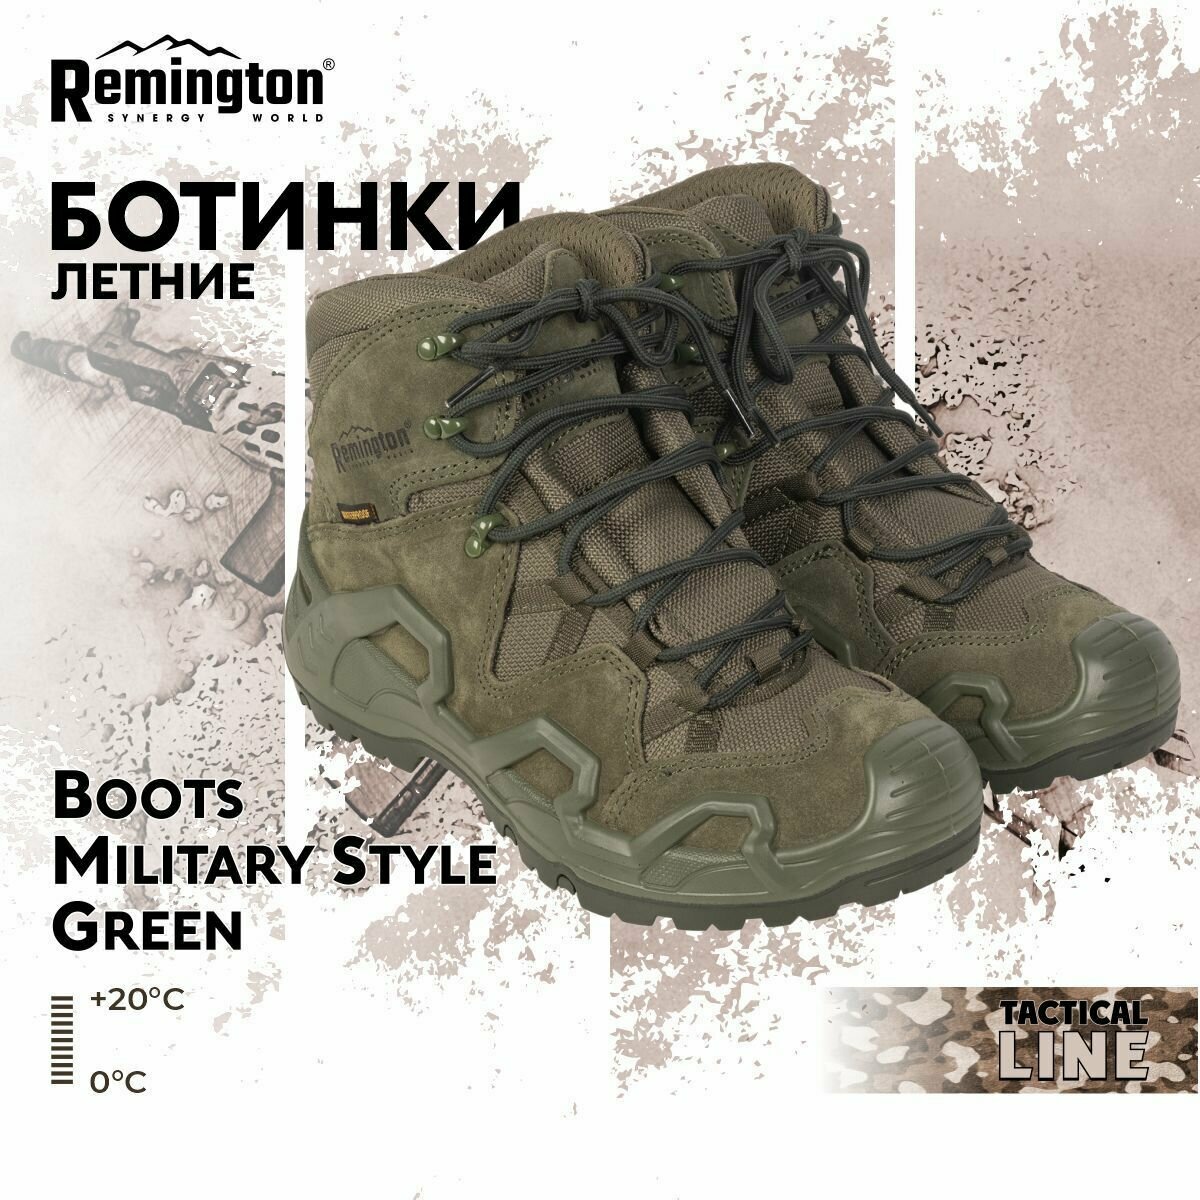 Ботинки Remington Boots Military Style Green р. 44 RB4435-306